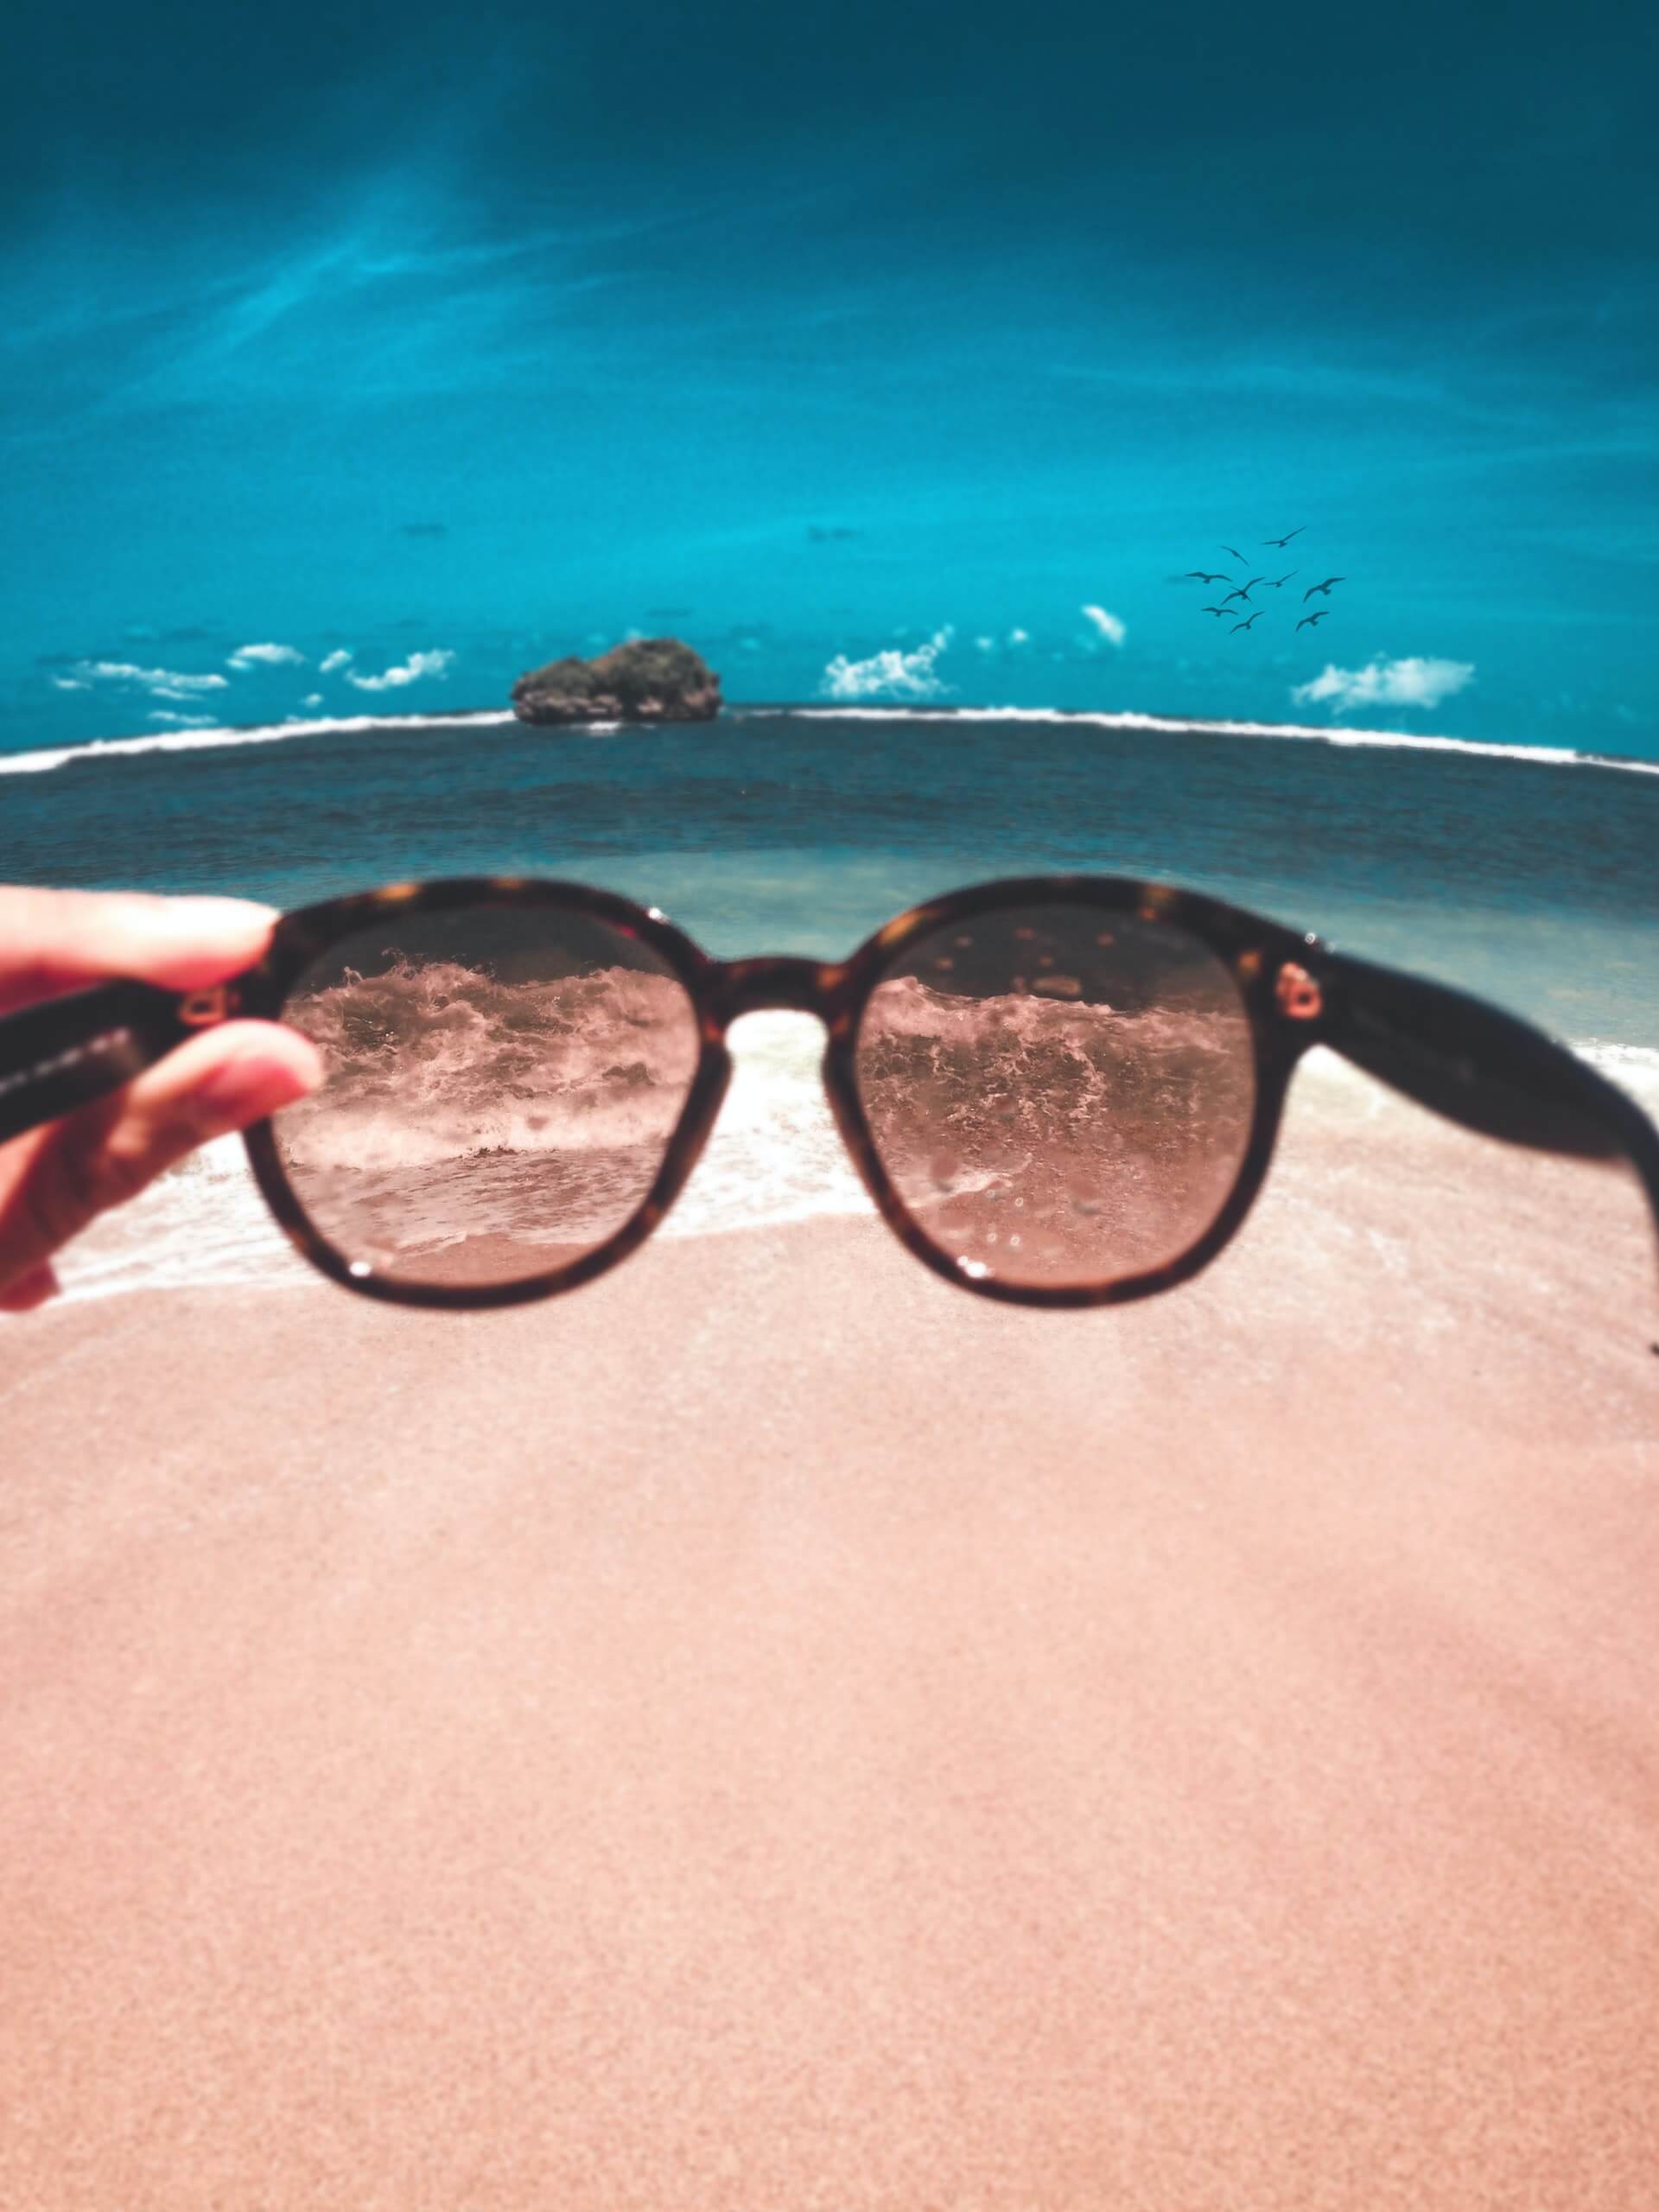 Sonnenbrille, die vor einen Strand gehalten wird - polarisierende Brillengläser